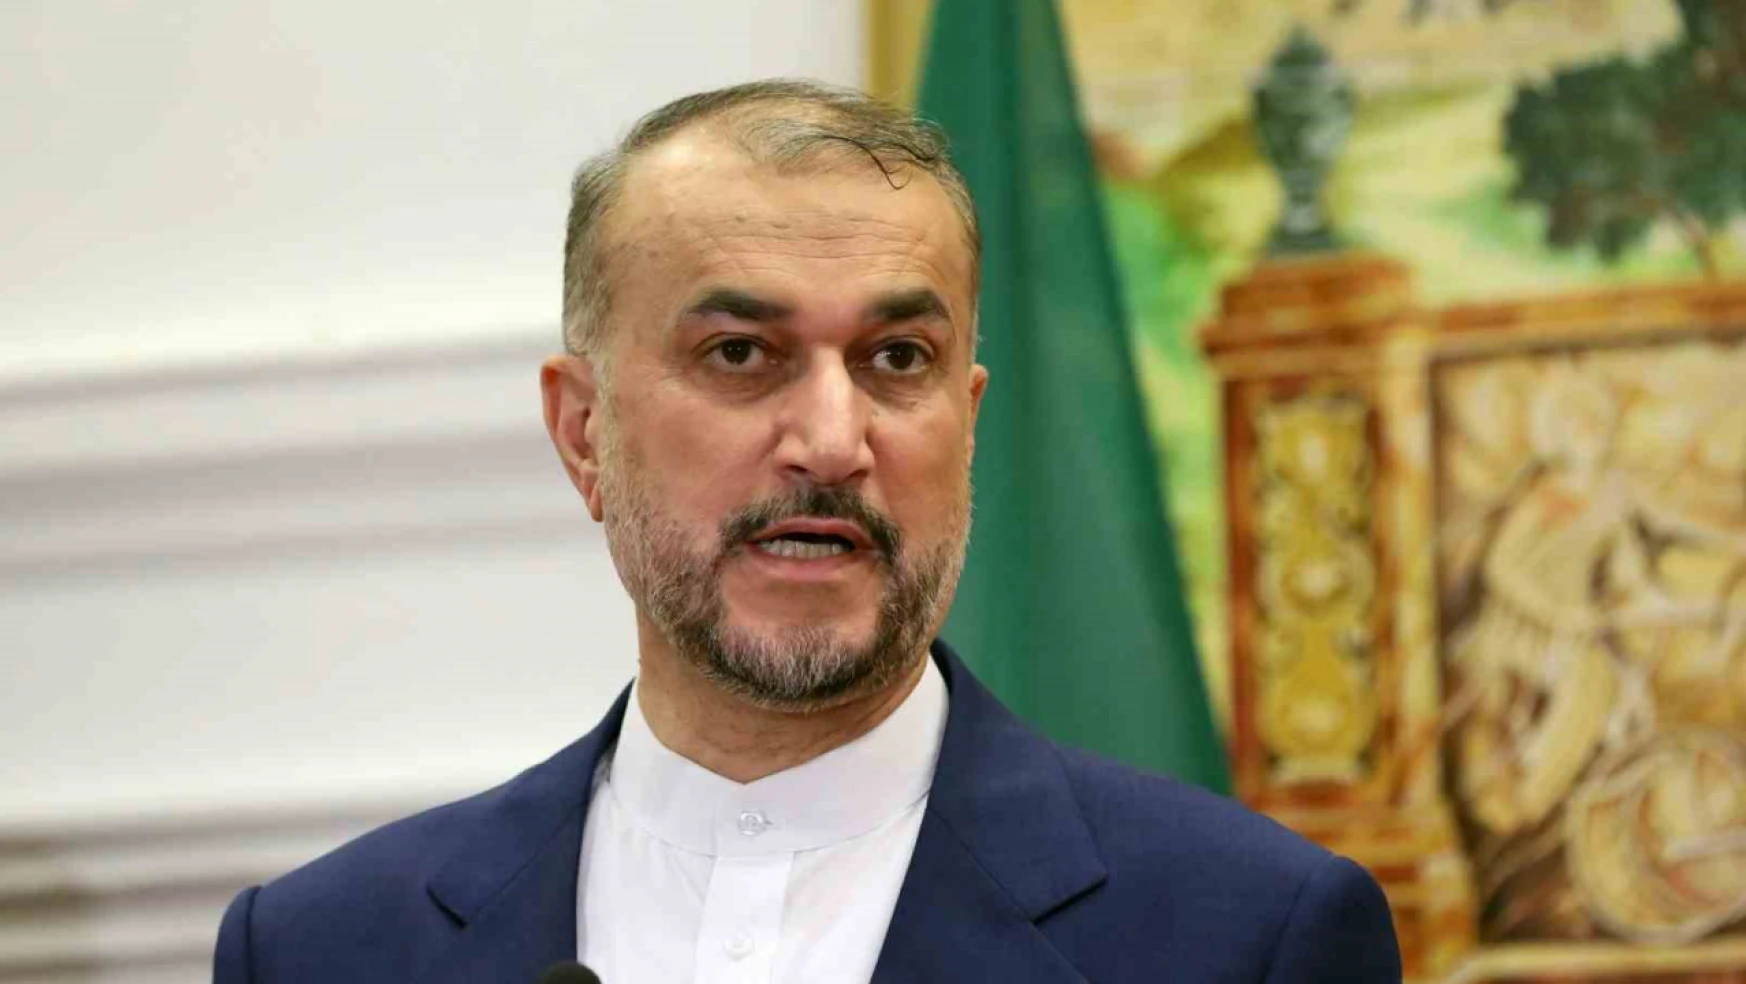 İran Dışişleri Bakanı Abdullahiyan: Meşru müdafaa hakkımızı kullandık ve saldırımız sona erdi